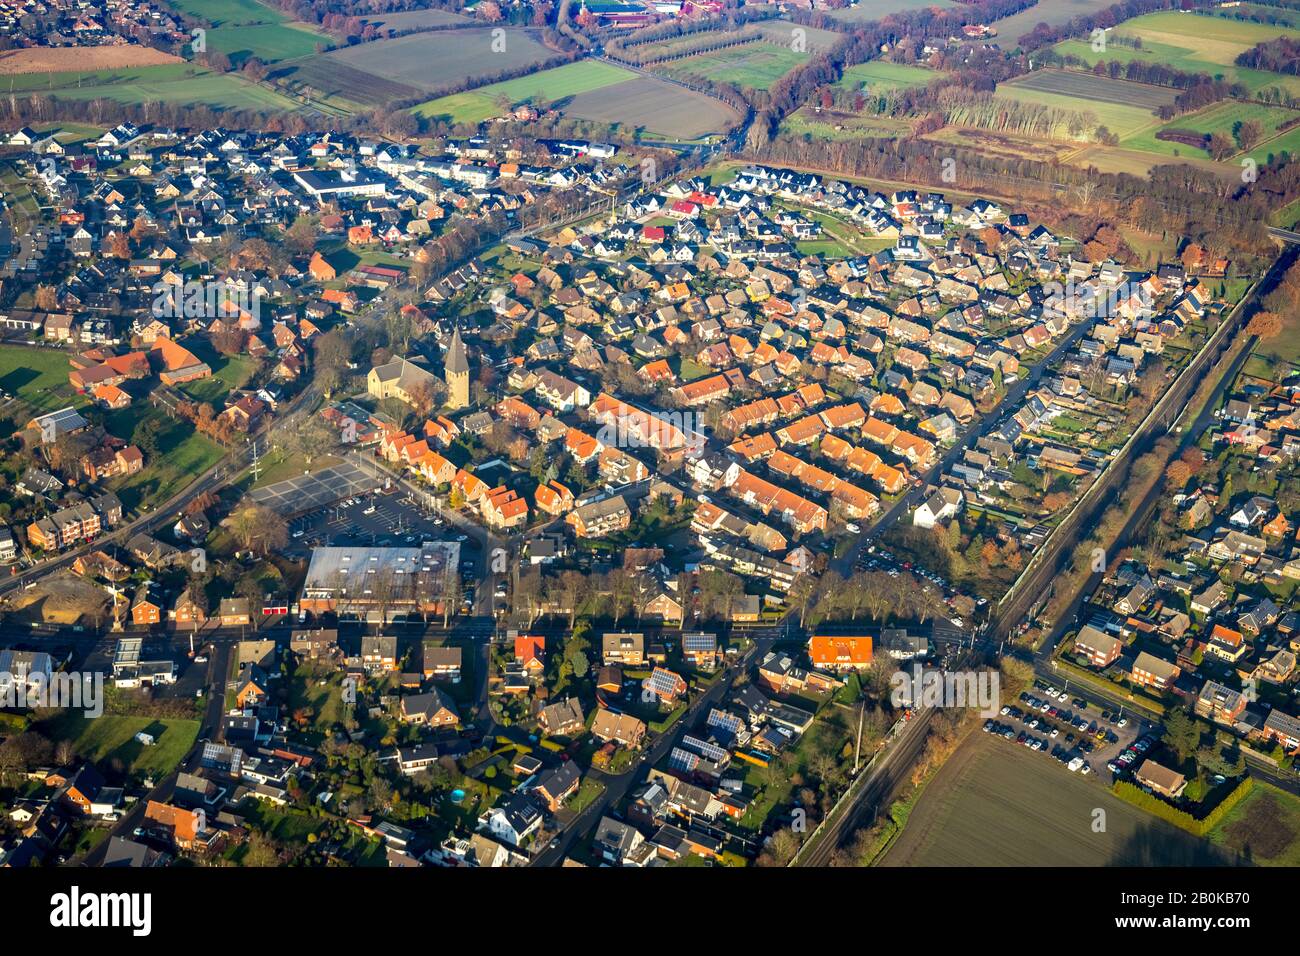 Aerial view, Village view, Church St. Joseph, District Sythen, Haltern am See, Ruhrgebiet, North Rhine-Westphalia, Germany, An der Kirche, DE, Village Stock Photo